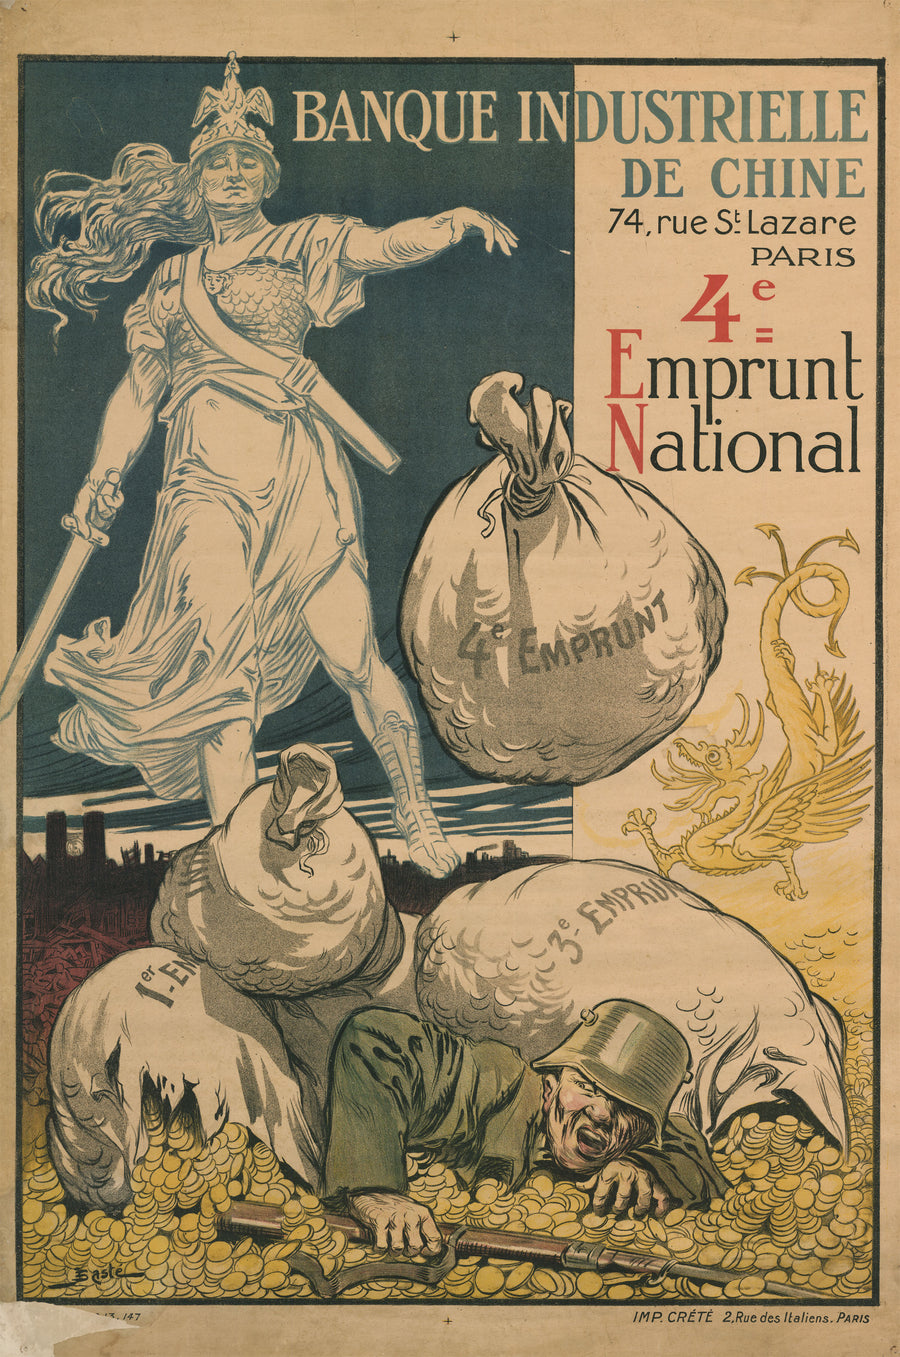 WWI Poster: Banque Industrielle de Chine 4e Emprunt National by: Basté 1914-1918